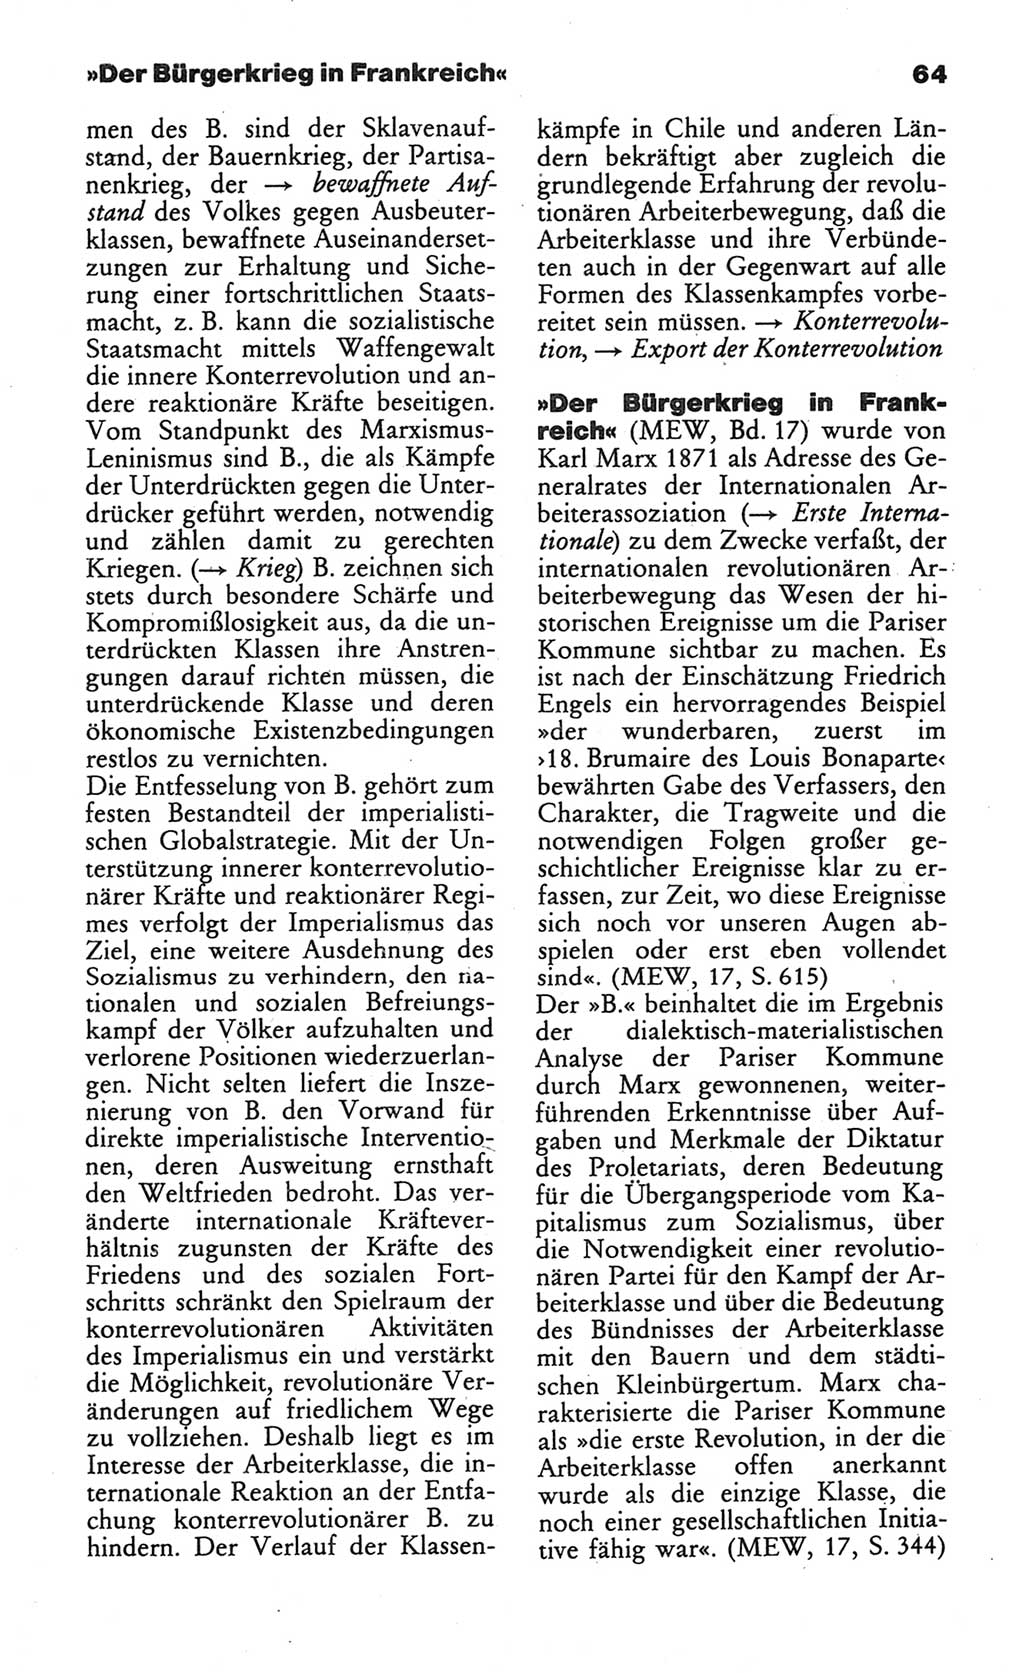 Wörterbuch des wissenschaftlichen Kommunismus [Deutsche Demokratische Republik (DDR)] 1984, Seite 64 (Wb. wiss. Komm. DDR 1984, S. 64)